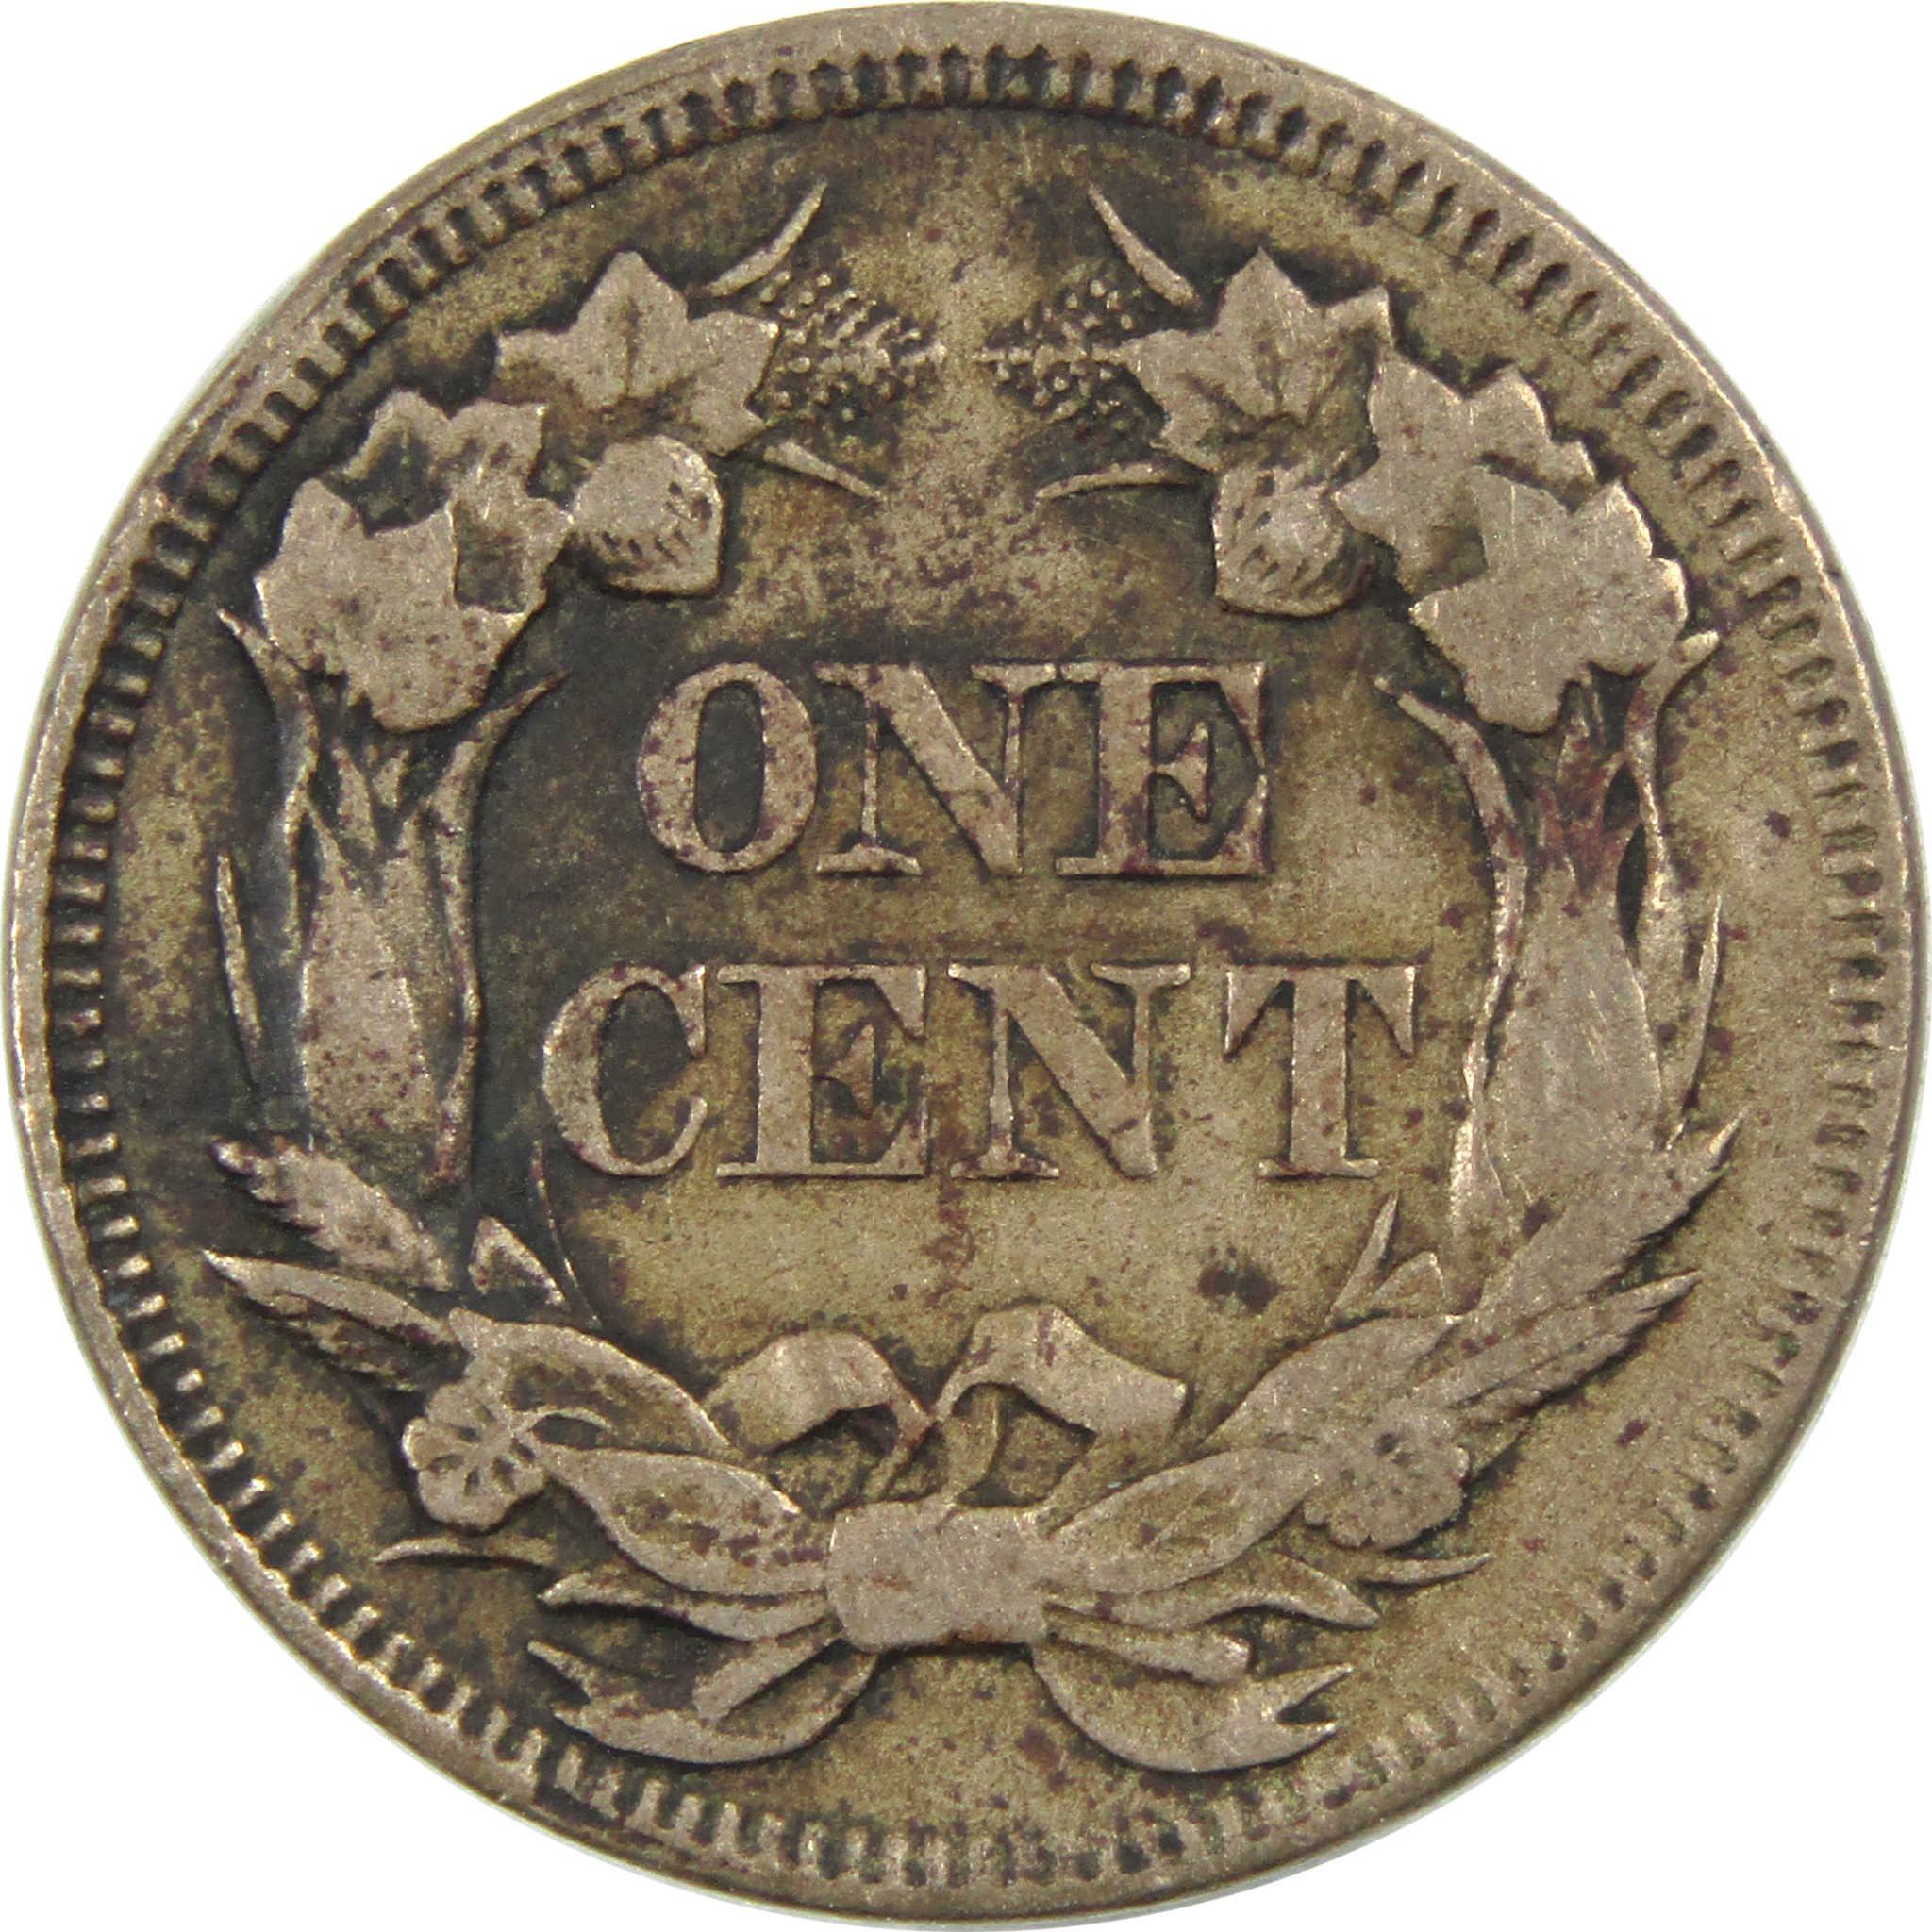 1857 Flying Eagle Cent Very Good Details Copper-Nickel SKU:I12994